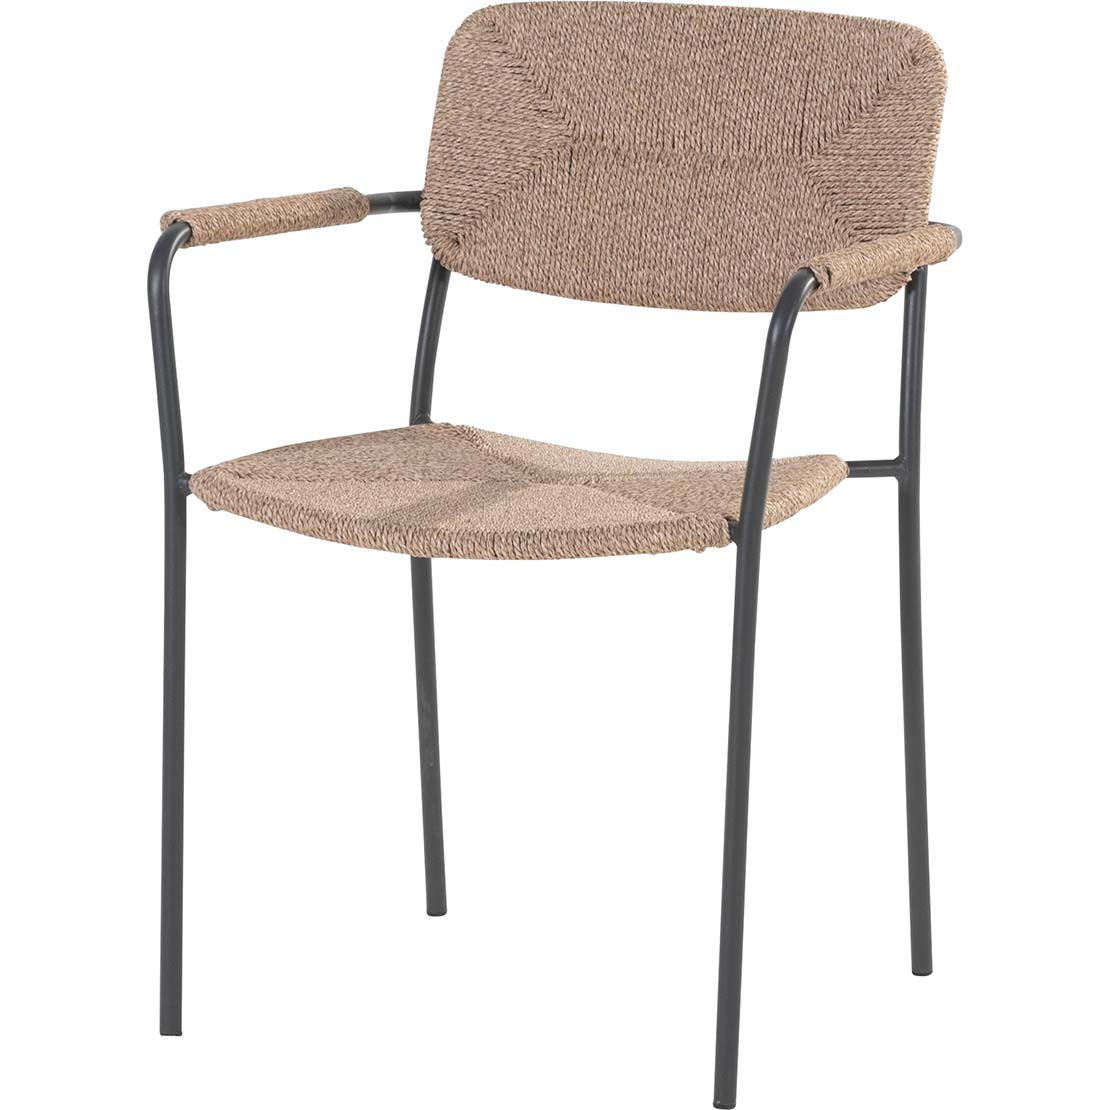 Bora stacking chair Natural